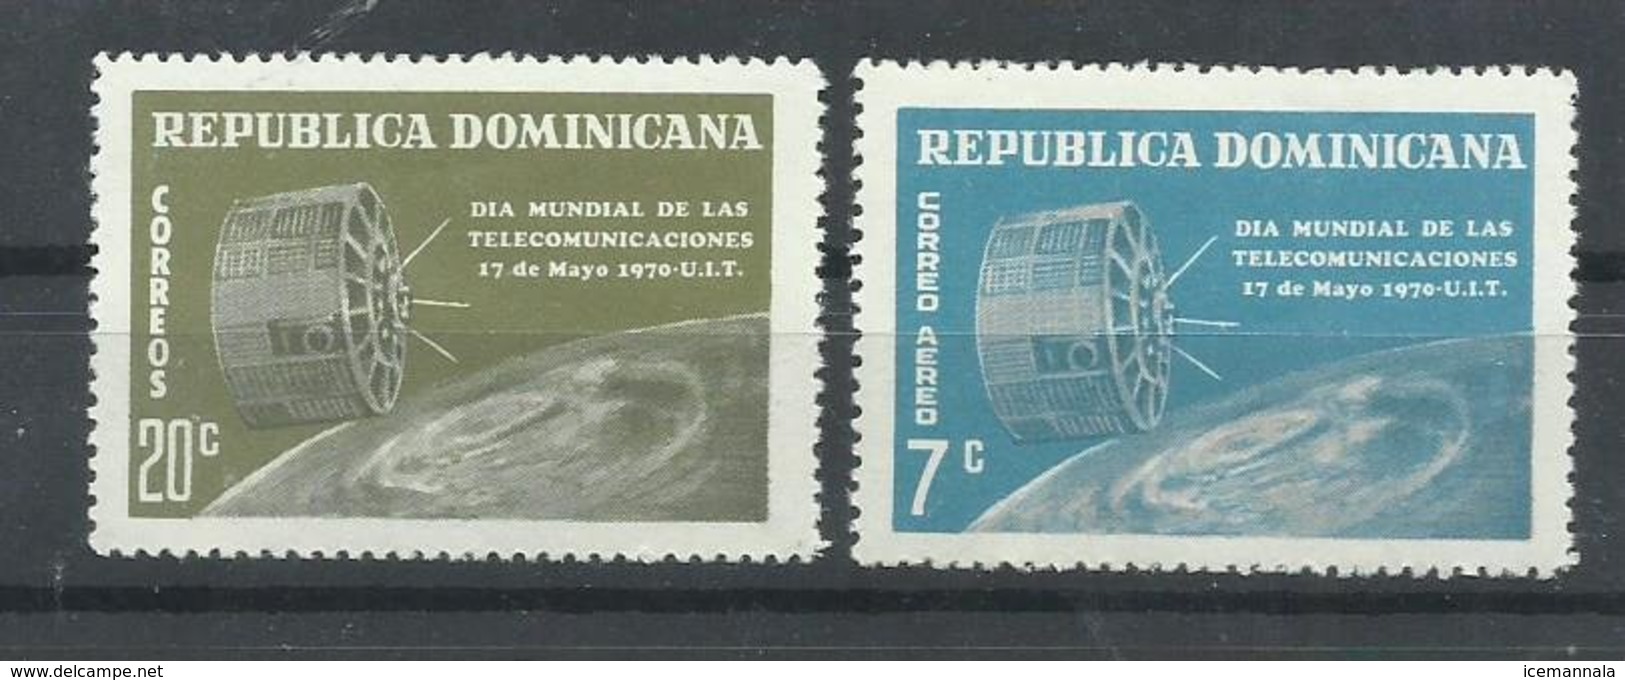 DOMINICANA YVERT  691,  AEREO  217   MNH  ** - República Dominicana